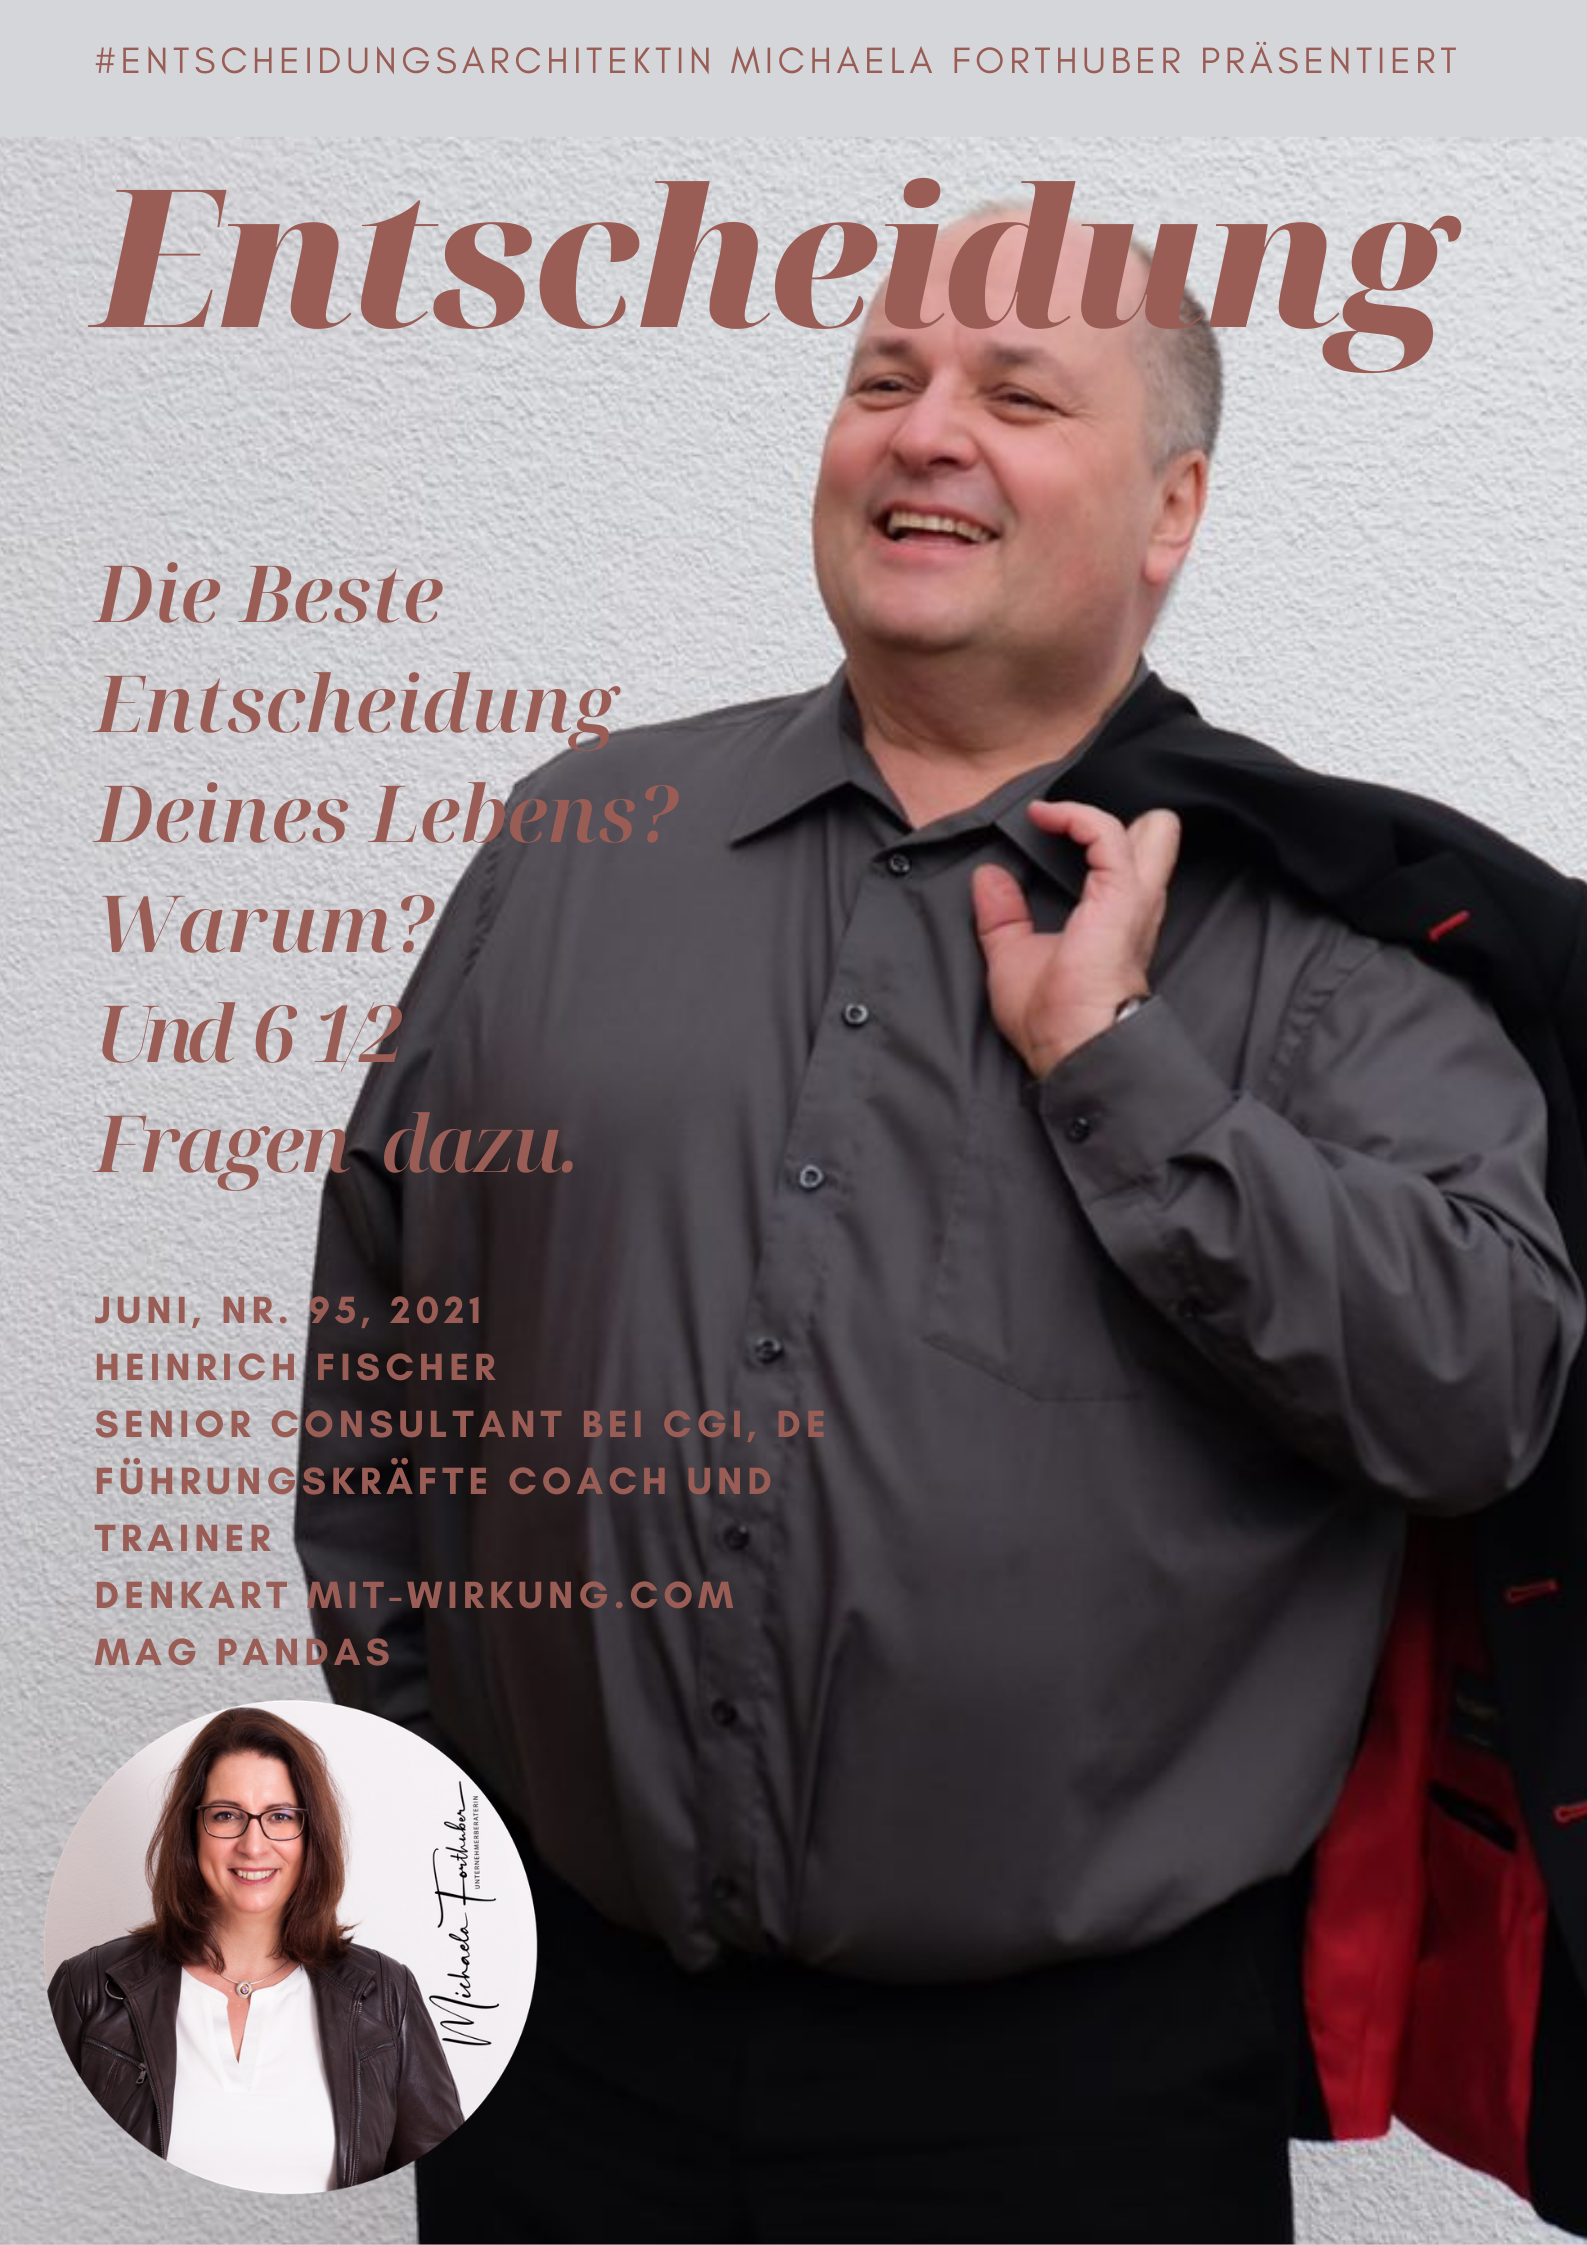 Blog Interview Entscheiden Cover Michaela Forthuber #Entscheidungsarchitektin mit Heinrich Fischer